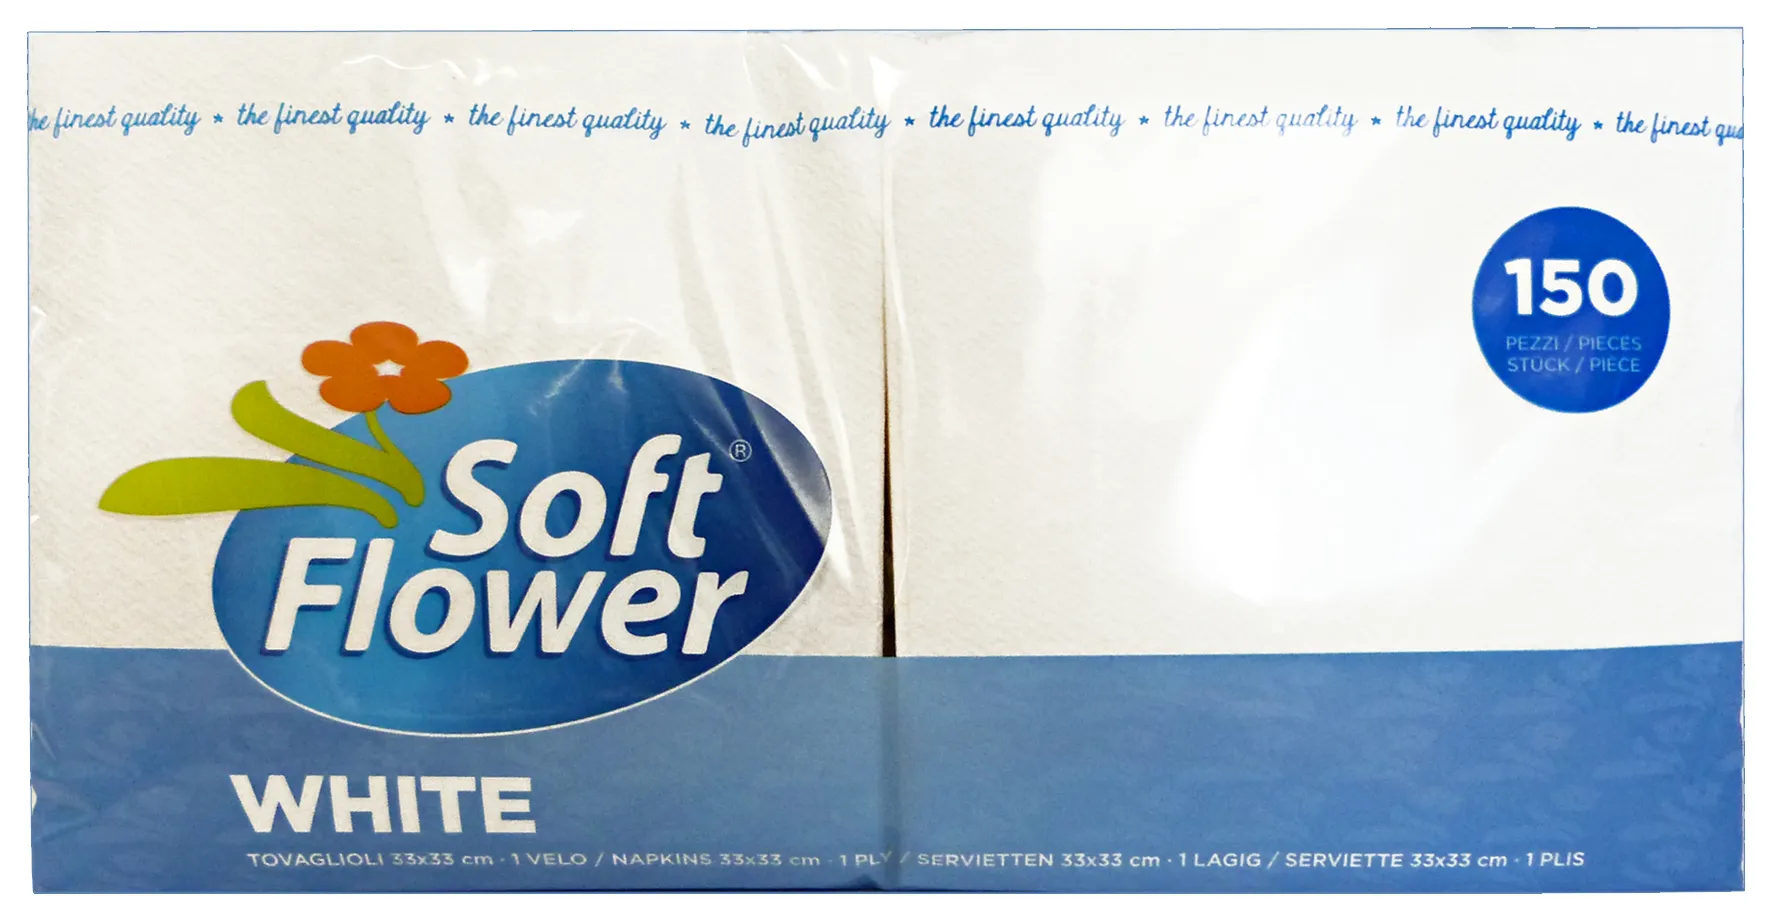 "SOFT FLOWER 150 pz. bianchi tovaglioli - Tovaglioli e tovaglie"